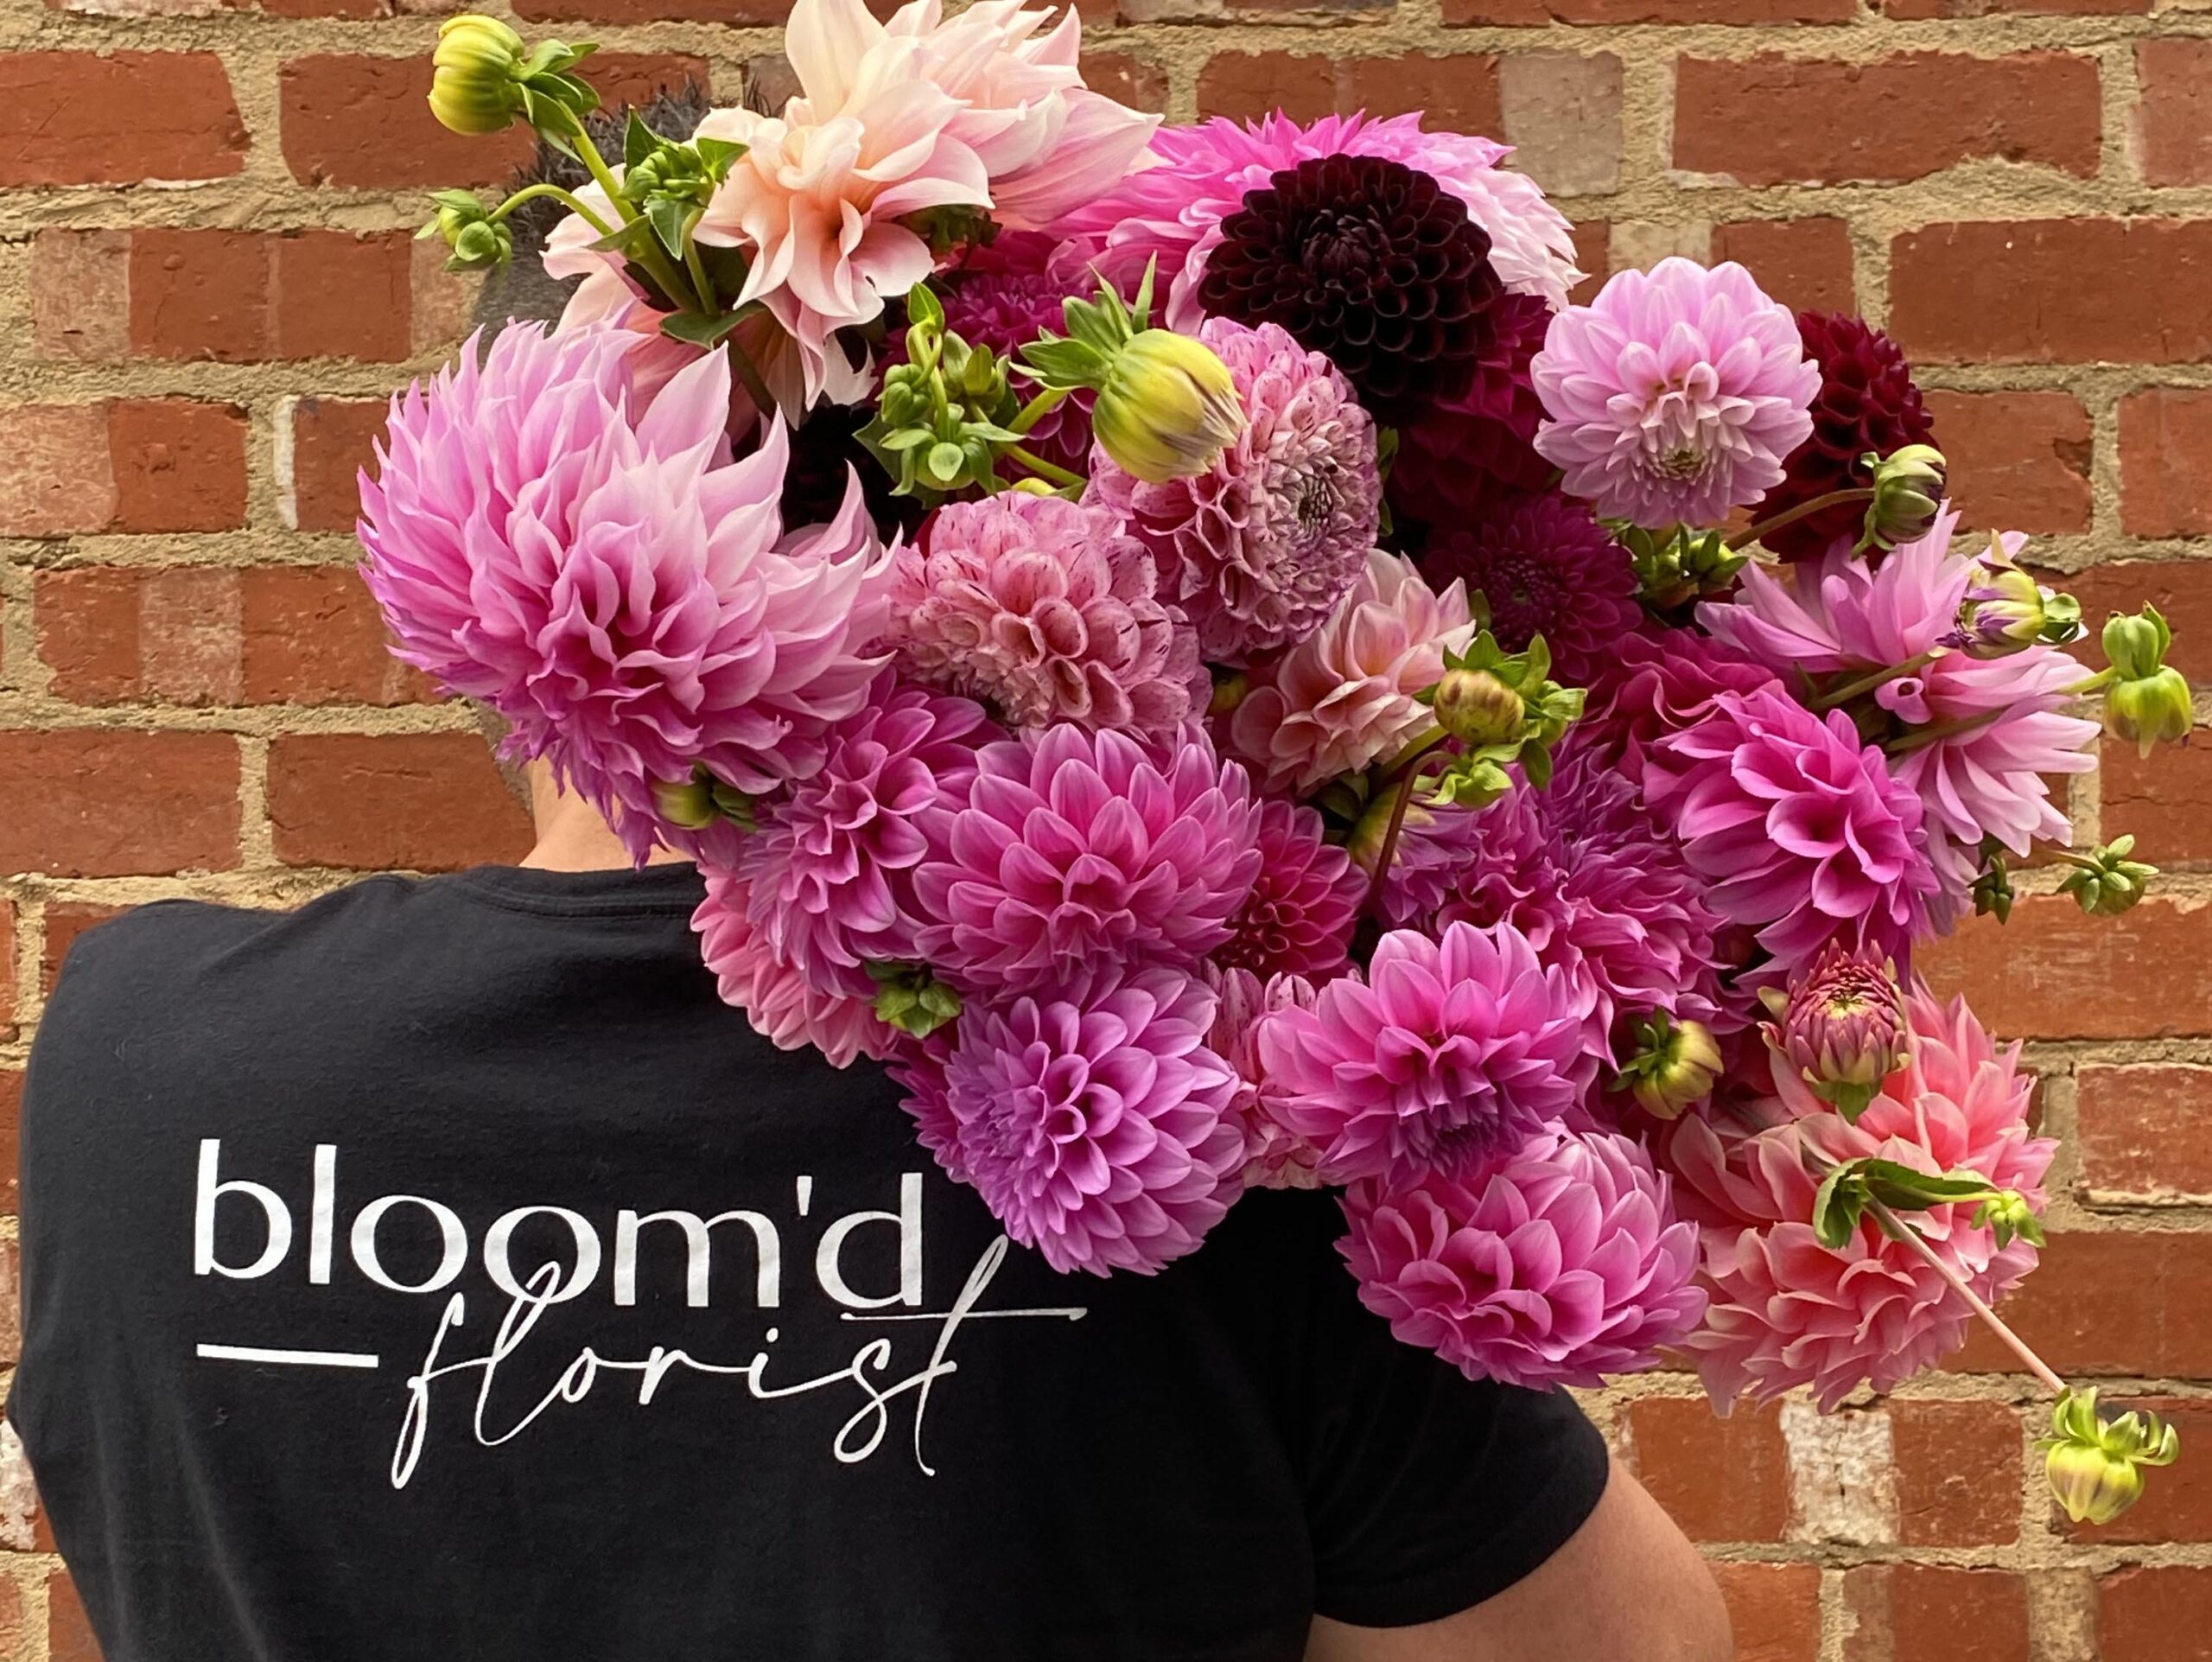 A Man Wearing A Bloom'd Florist T-Shirt Carries A Bunch Of Pink & Green Flowers